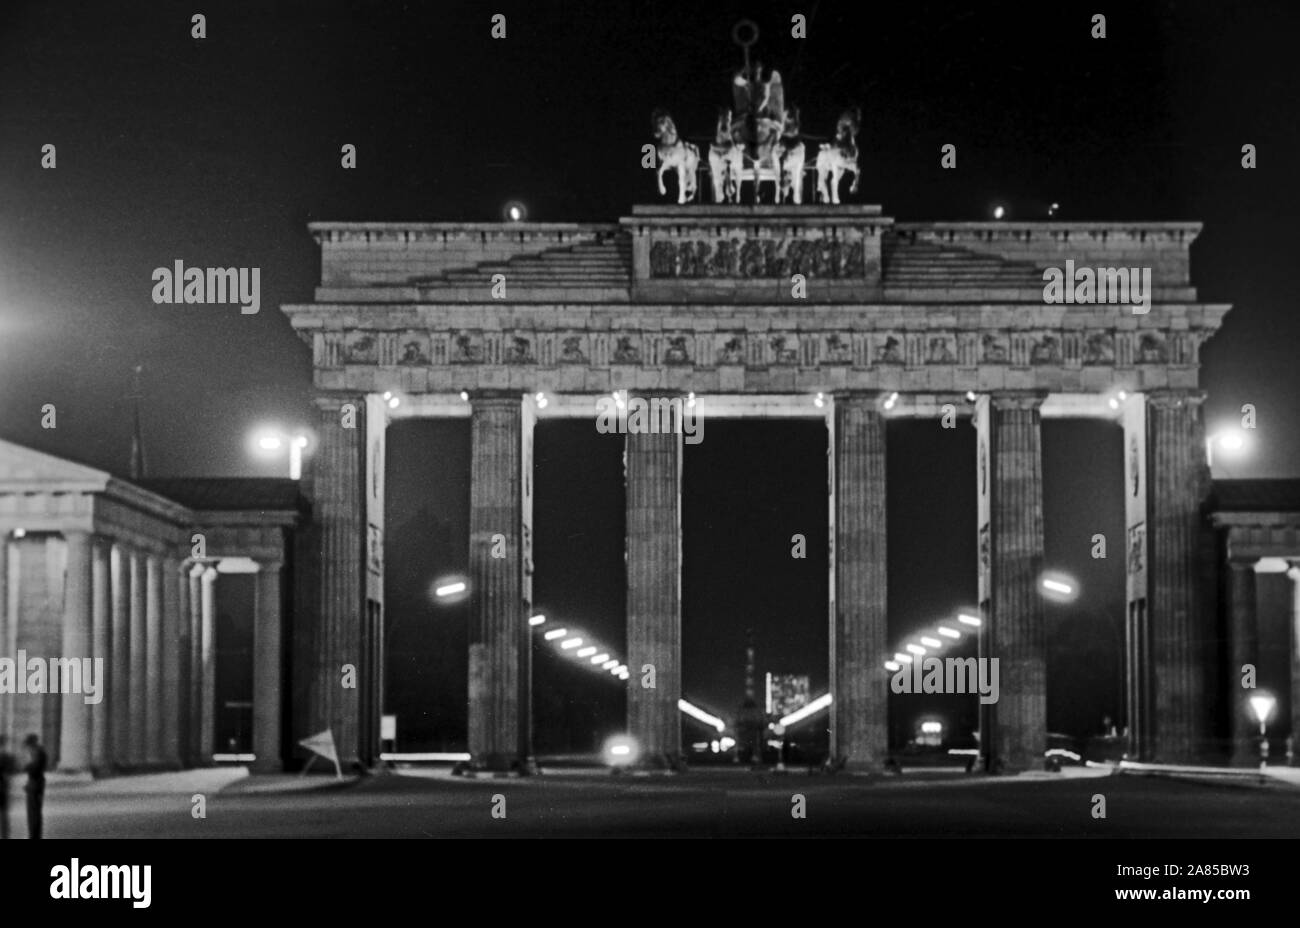 Das Brandenburger Tor bei Nacht in Berlin zwei Wochen vor dem Mauerbau, Deutschland 1961. Brandenburg gate at Berlin by night, two weeks before the wall was built, Germany 1961. Stock Photo